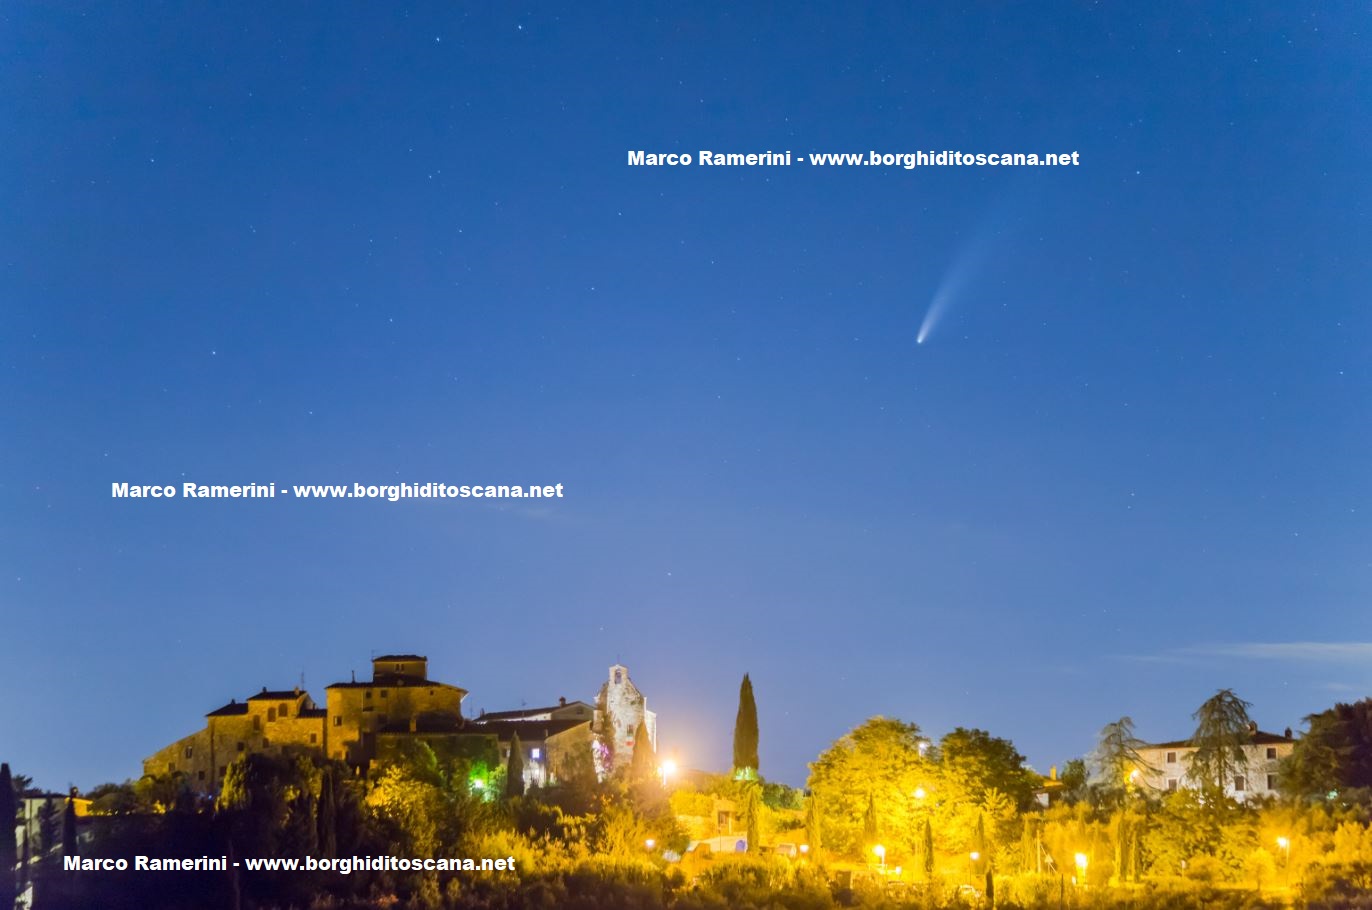 La cometa Neowise sul borgo medievale di Tignano. Autore e Copyright Marco Ramerini